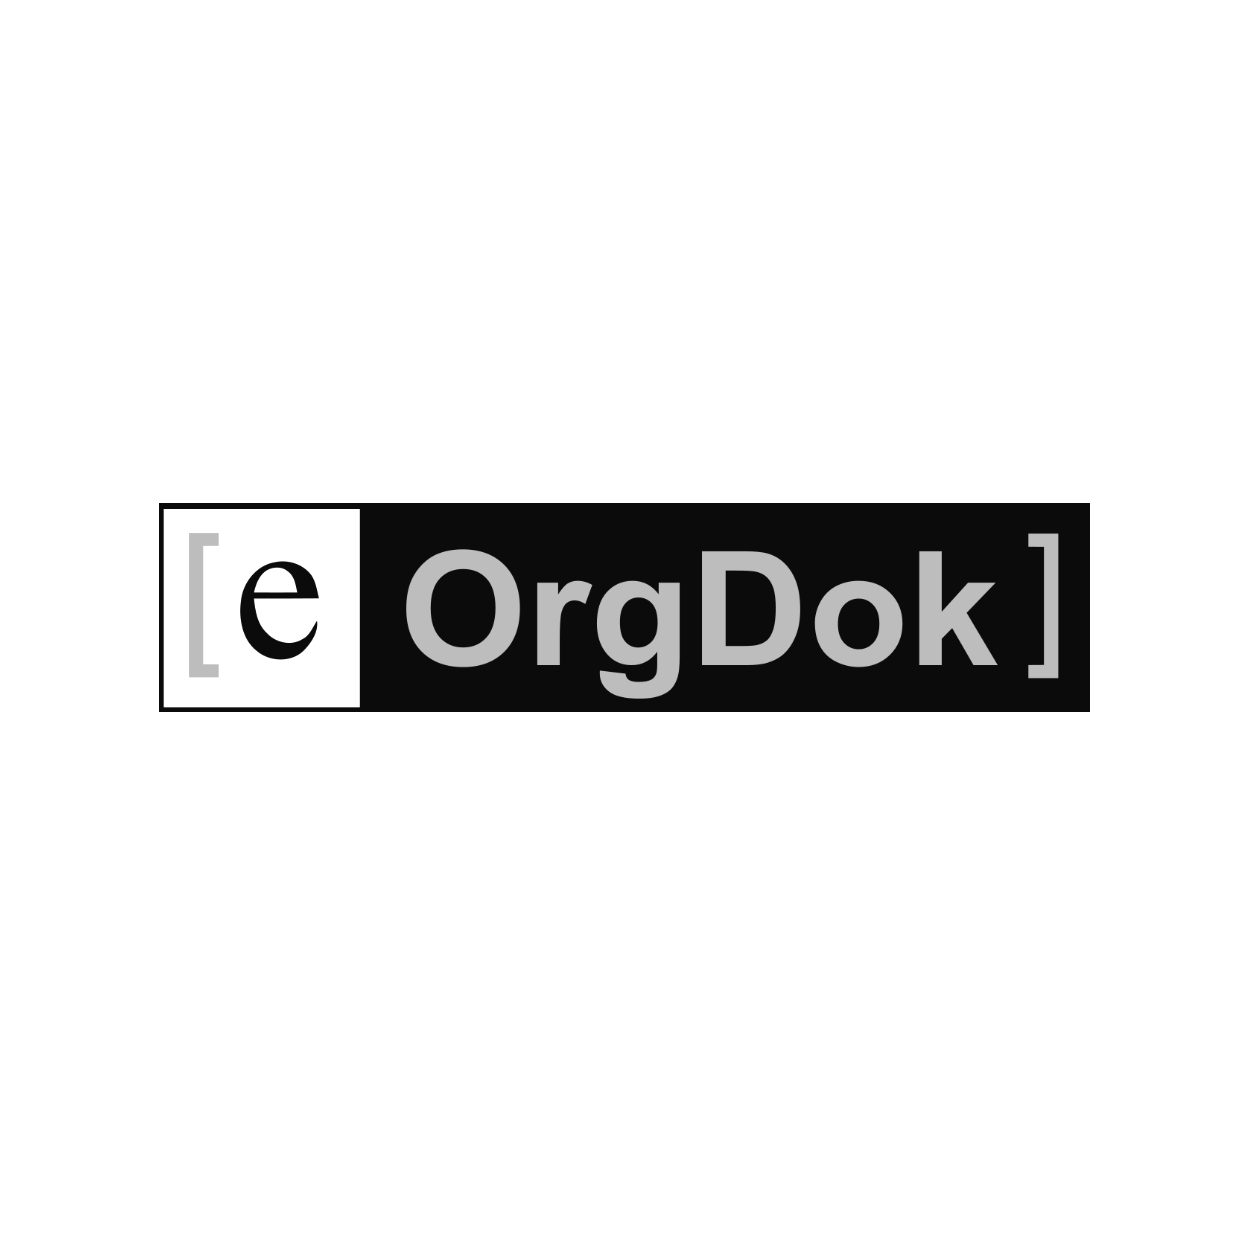 e-OrgDok